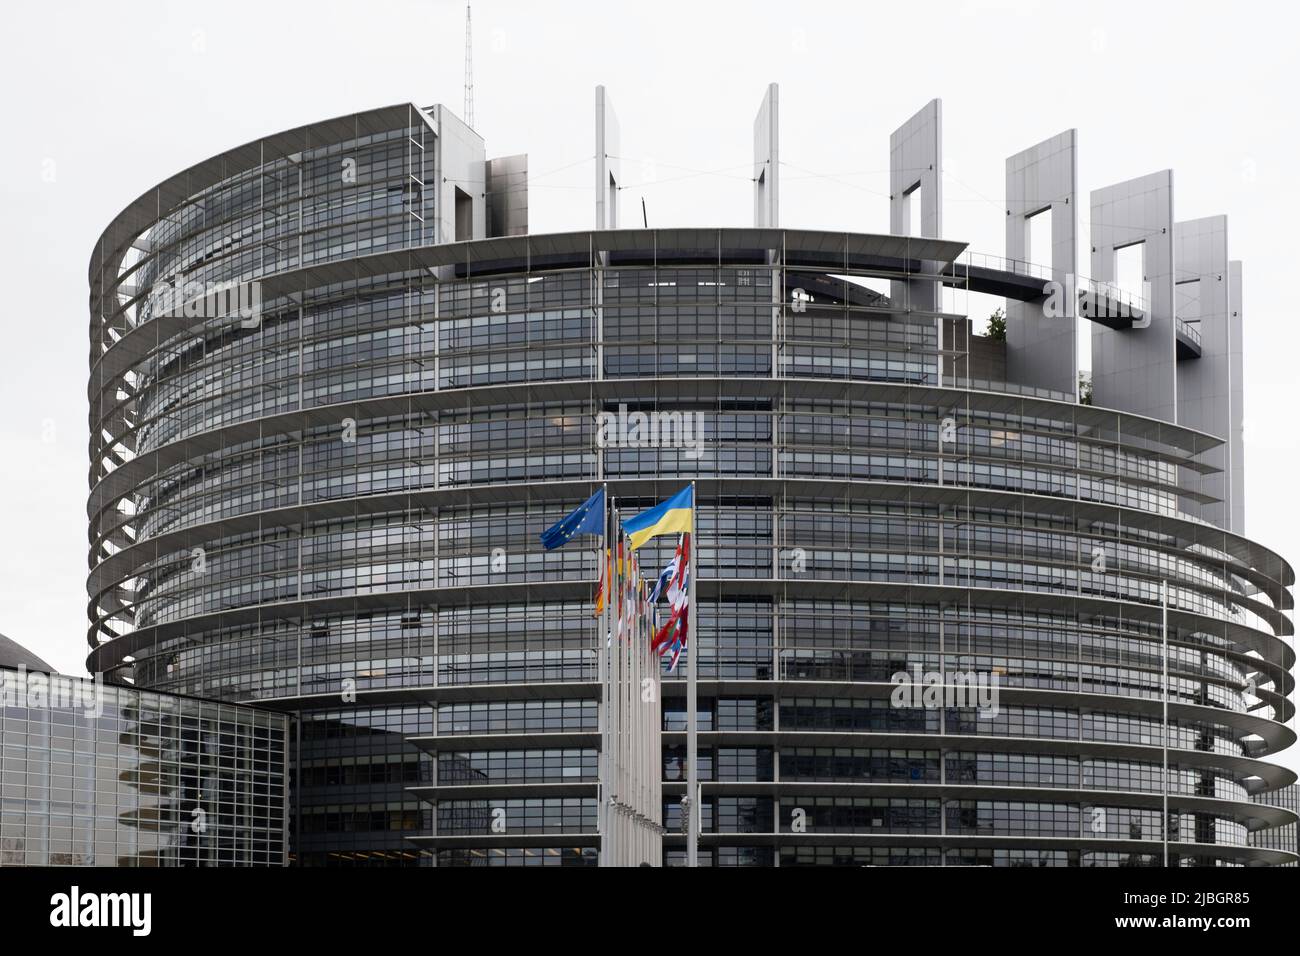 Fachada circular del edificio Louise Weiss del Parlamento Europeo con banderas de los 27 países, incluida la de Ucrania, en Estrasburgo Foto de stock